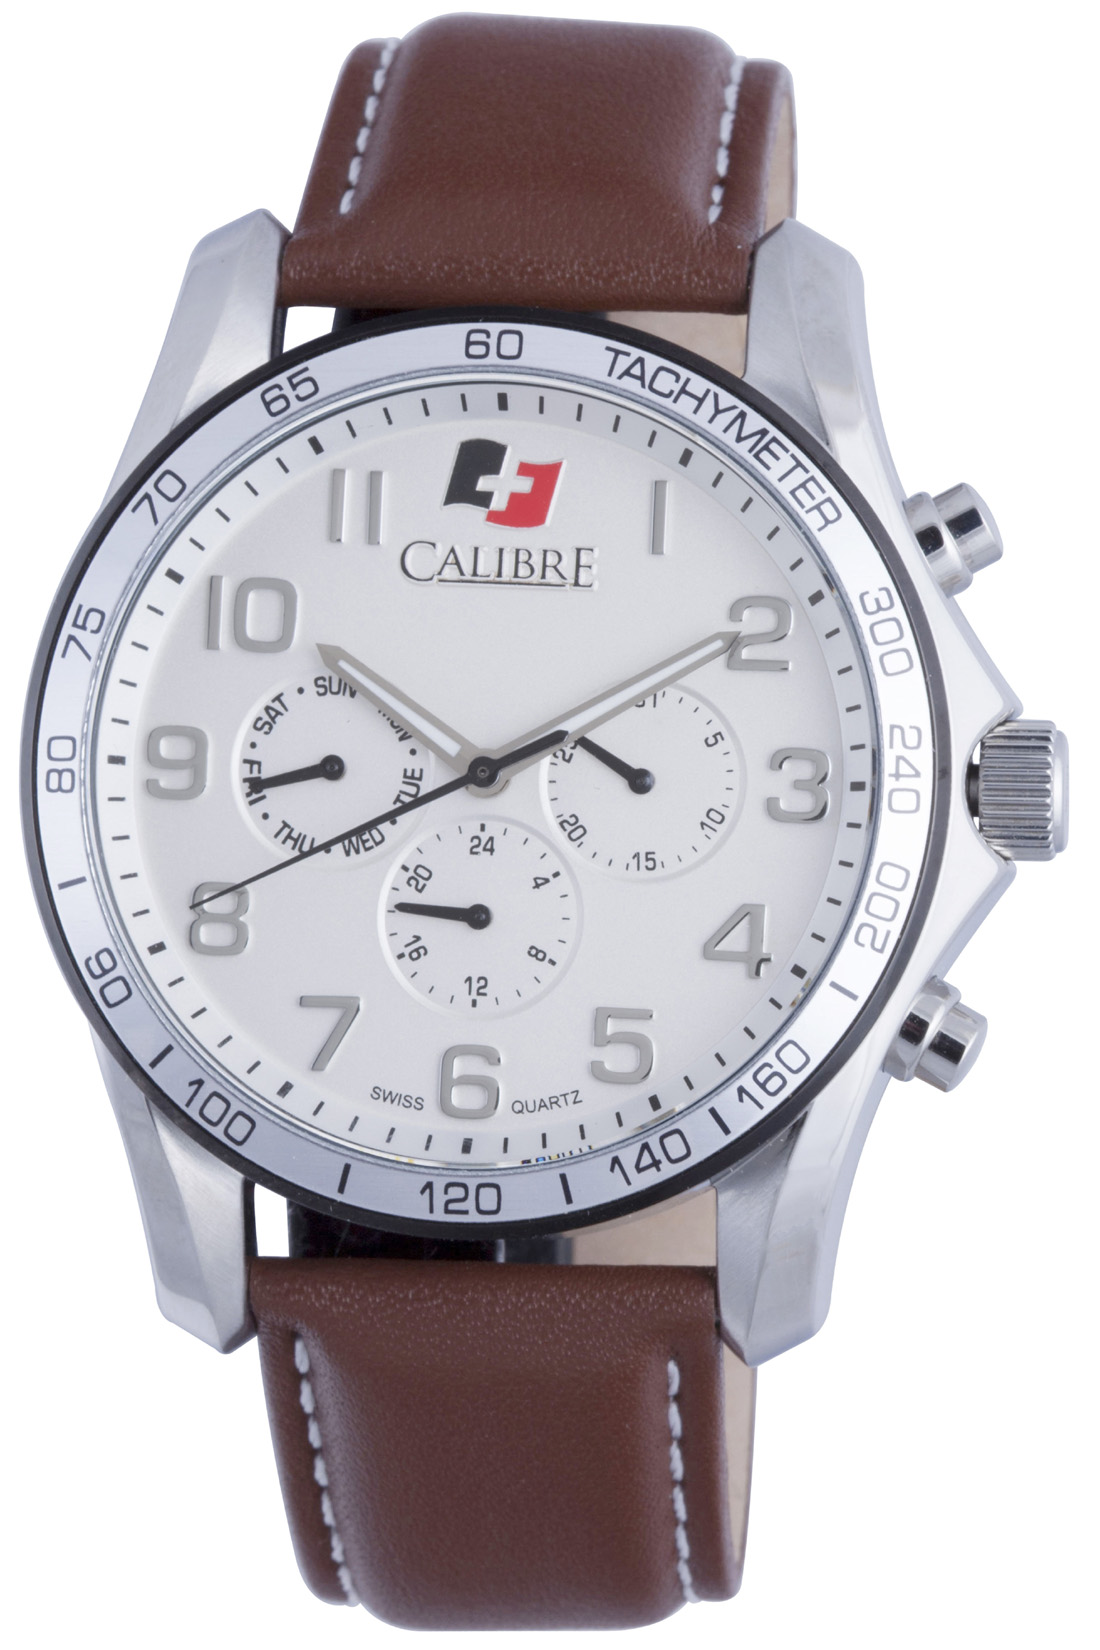 calibre watch